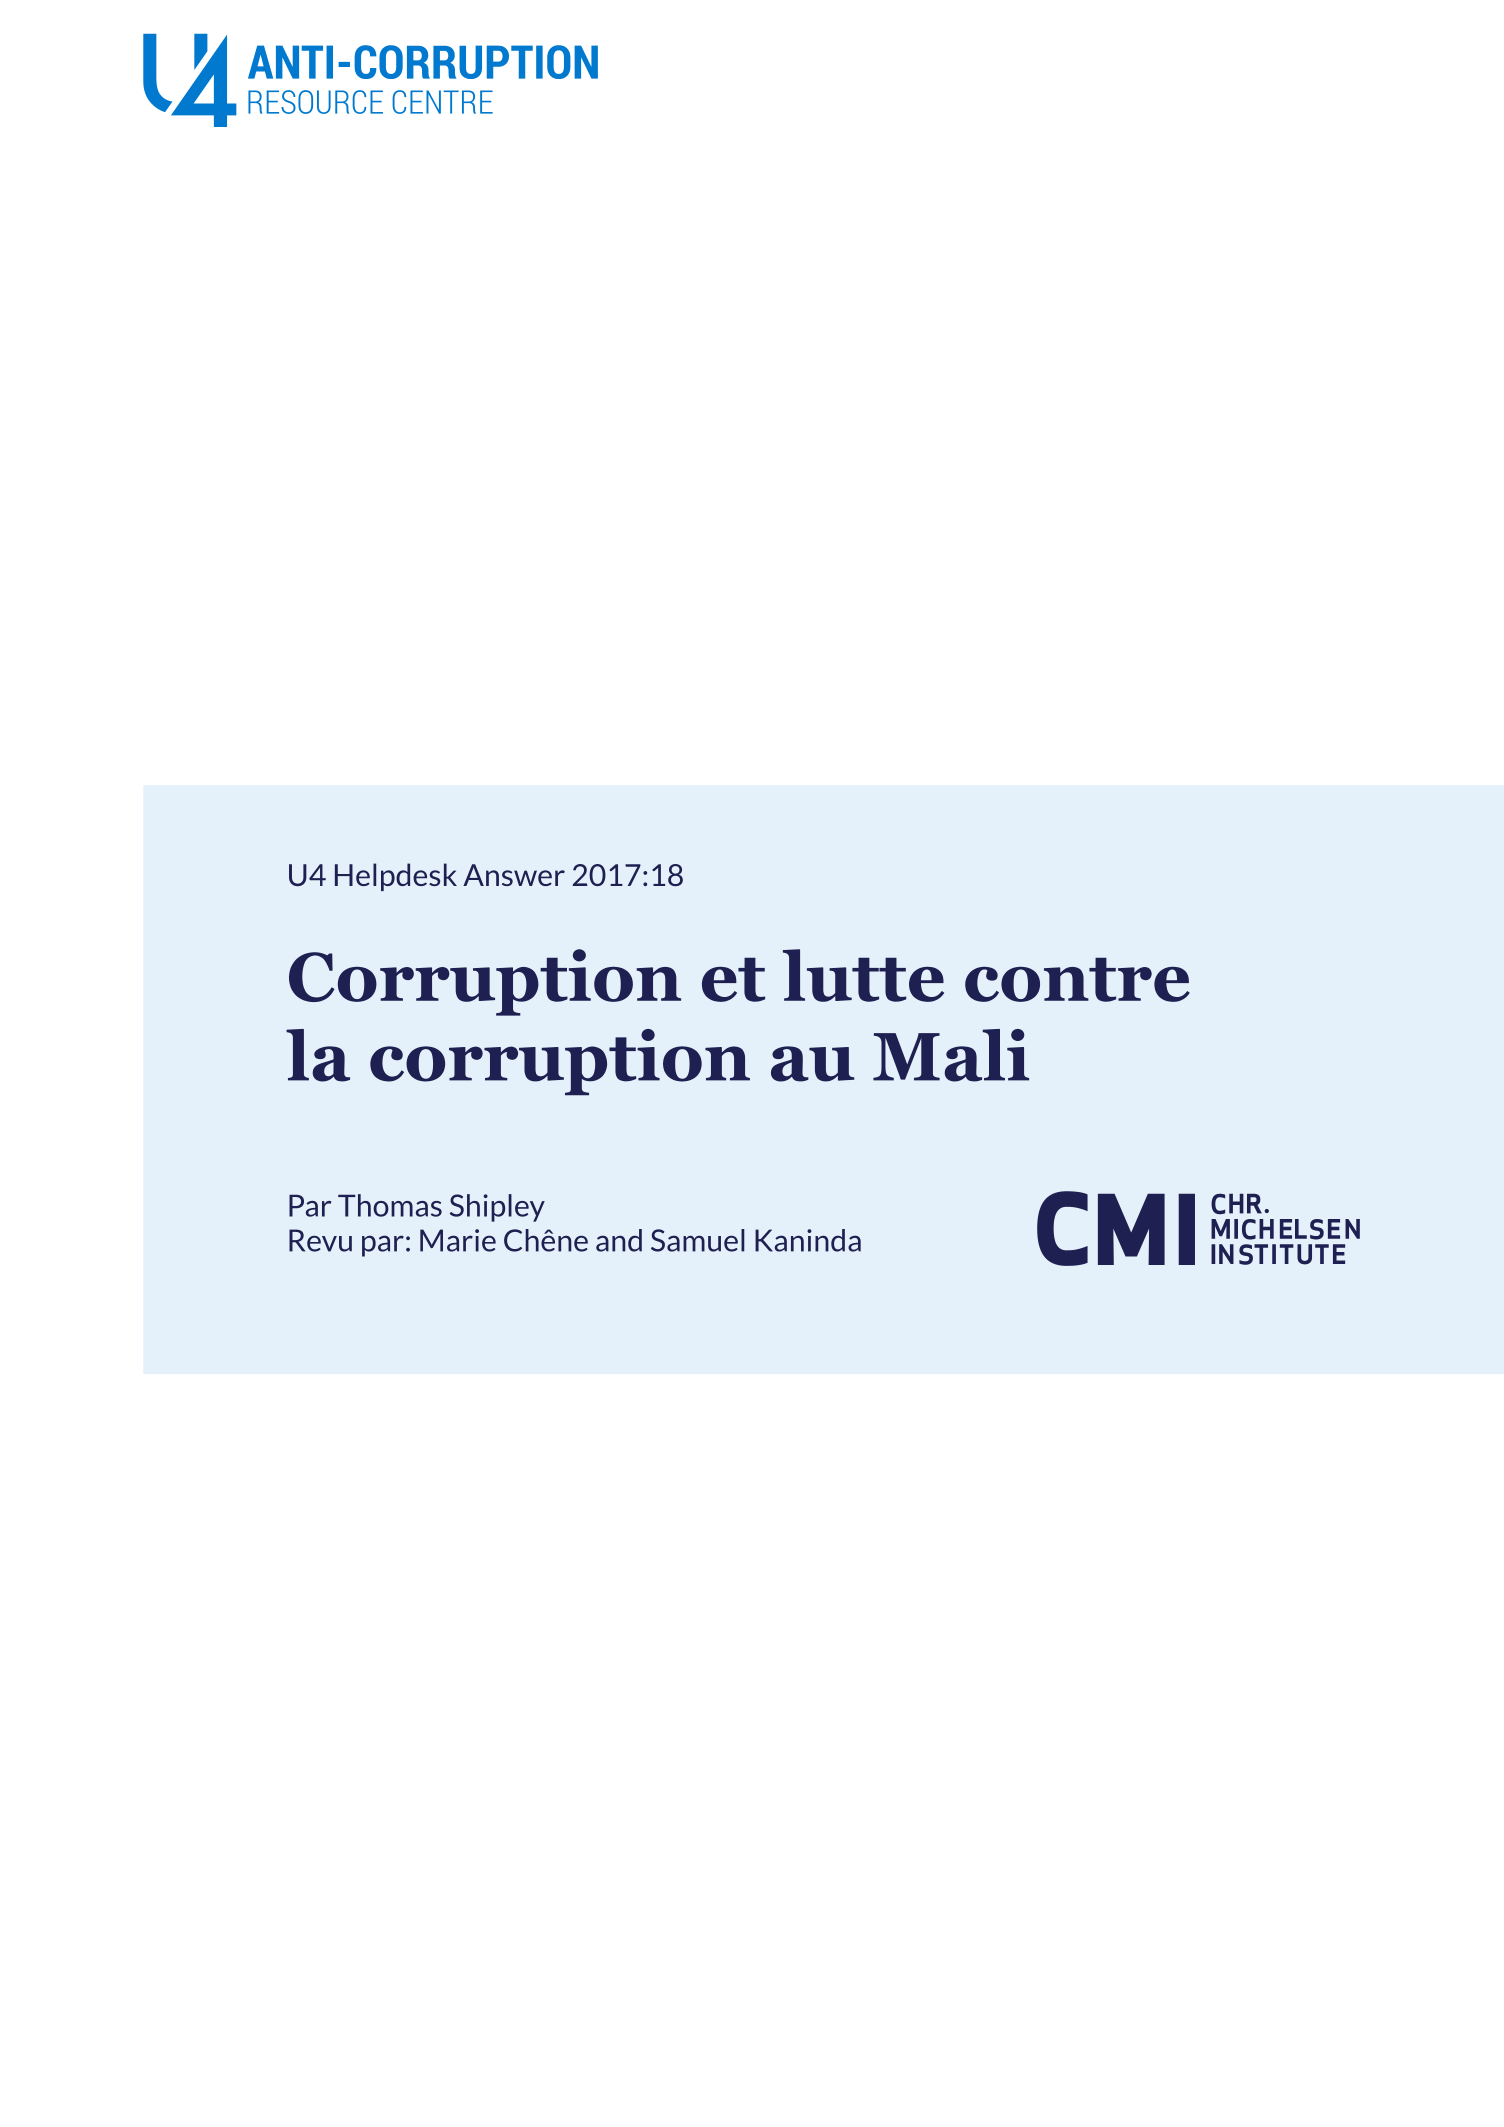 Corruption et lutte contre la corruption au Mali 